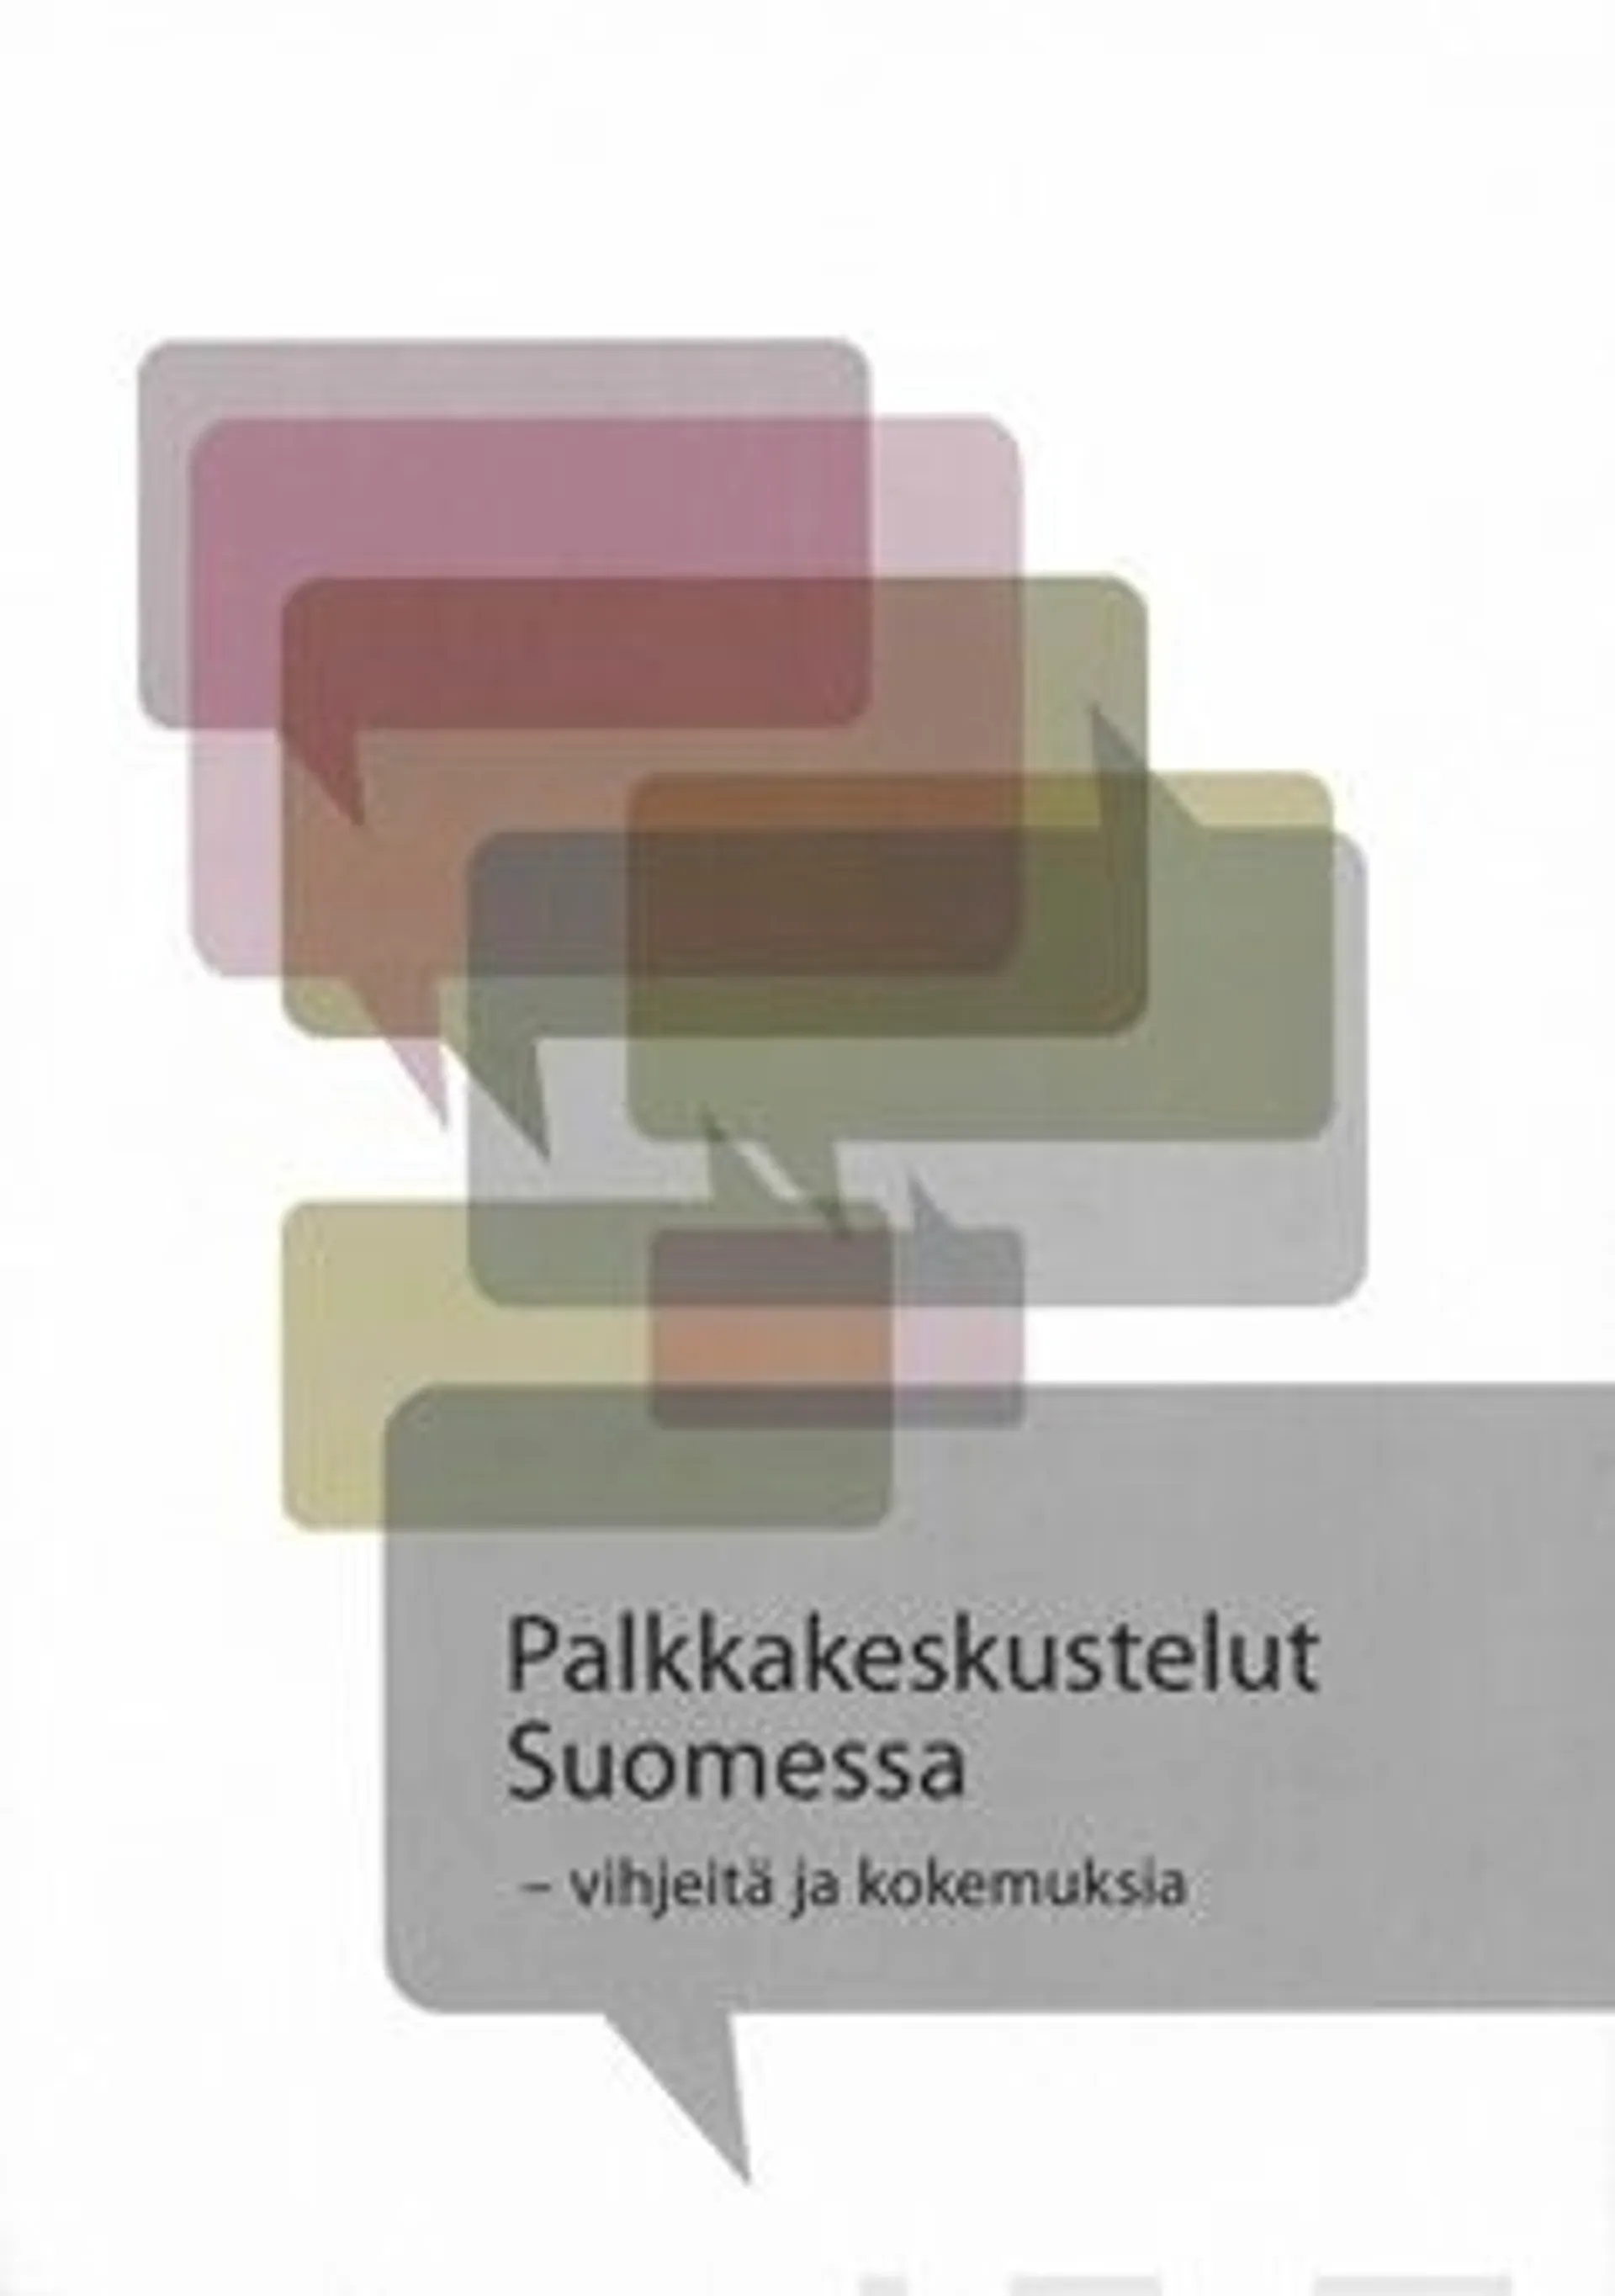 Palkkakeskustelut Suomessa - vihjeitä ja kokemuksia